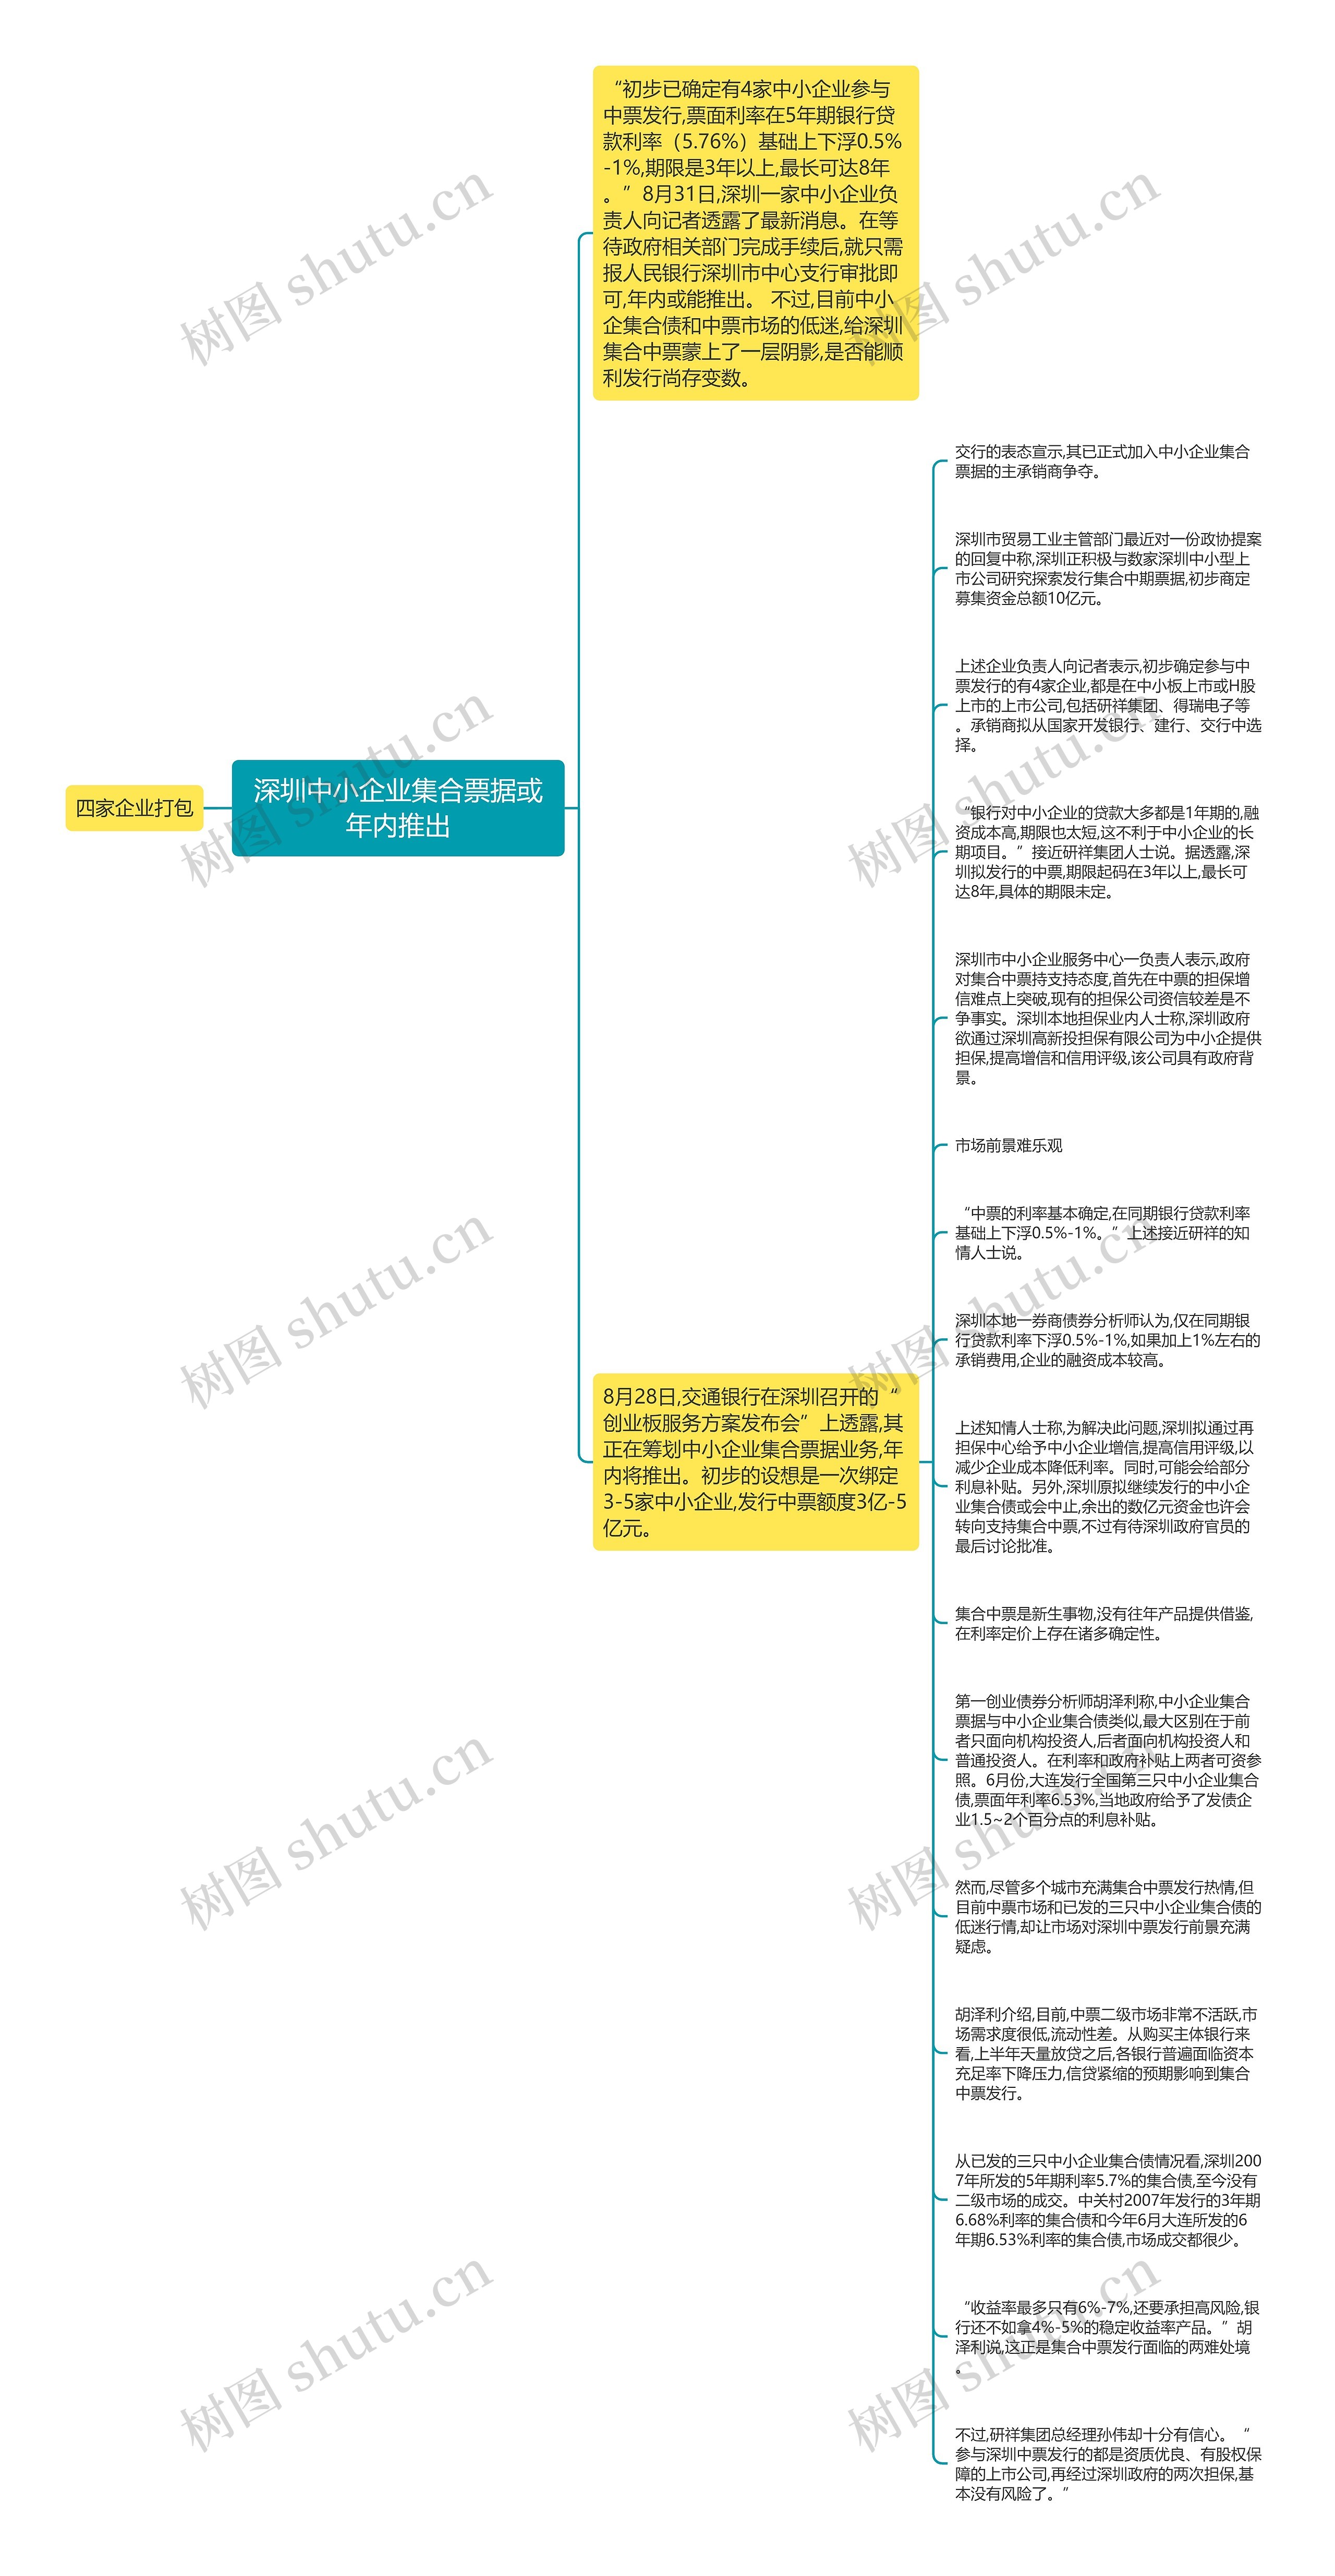 深圳中小企业集合票据或年内推出思维导图